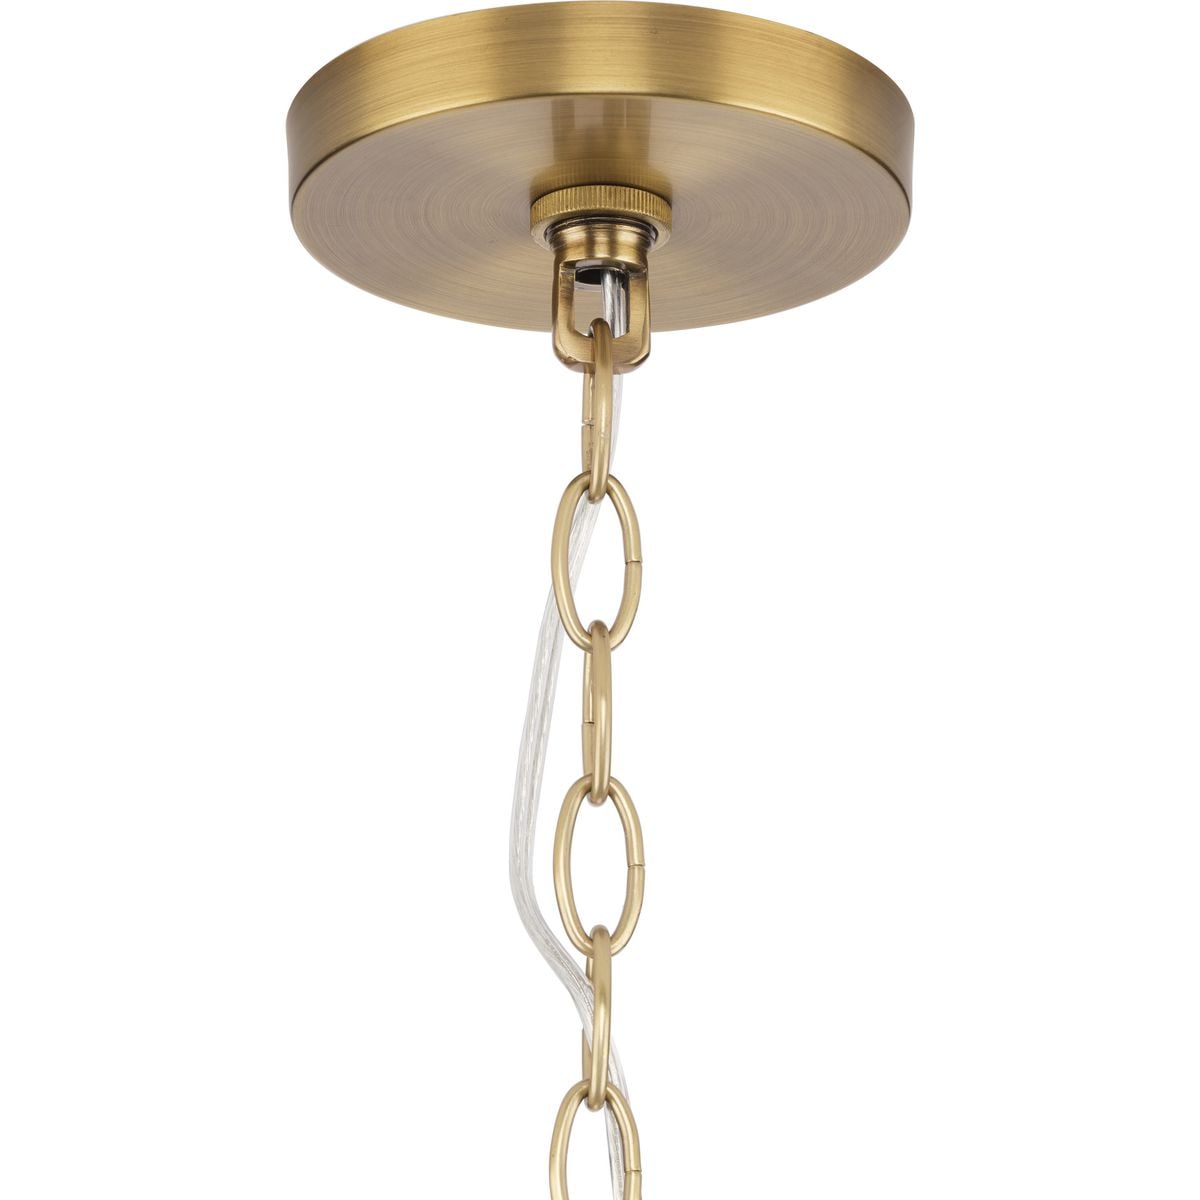 Brass Key to the Bastille – Jefferson Brass Company